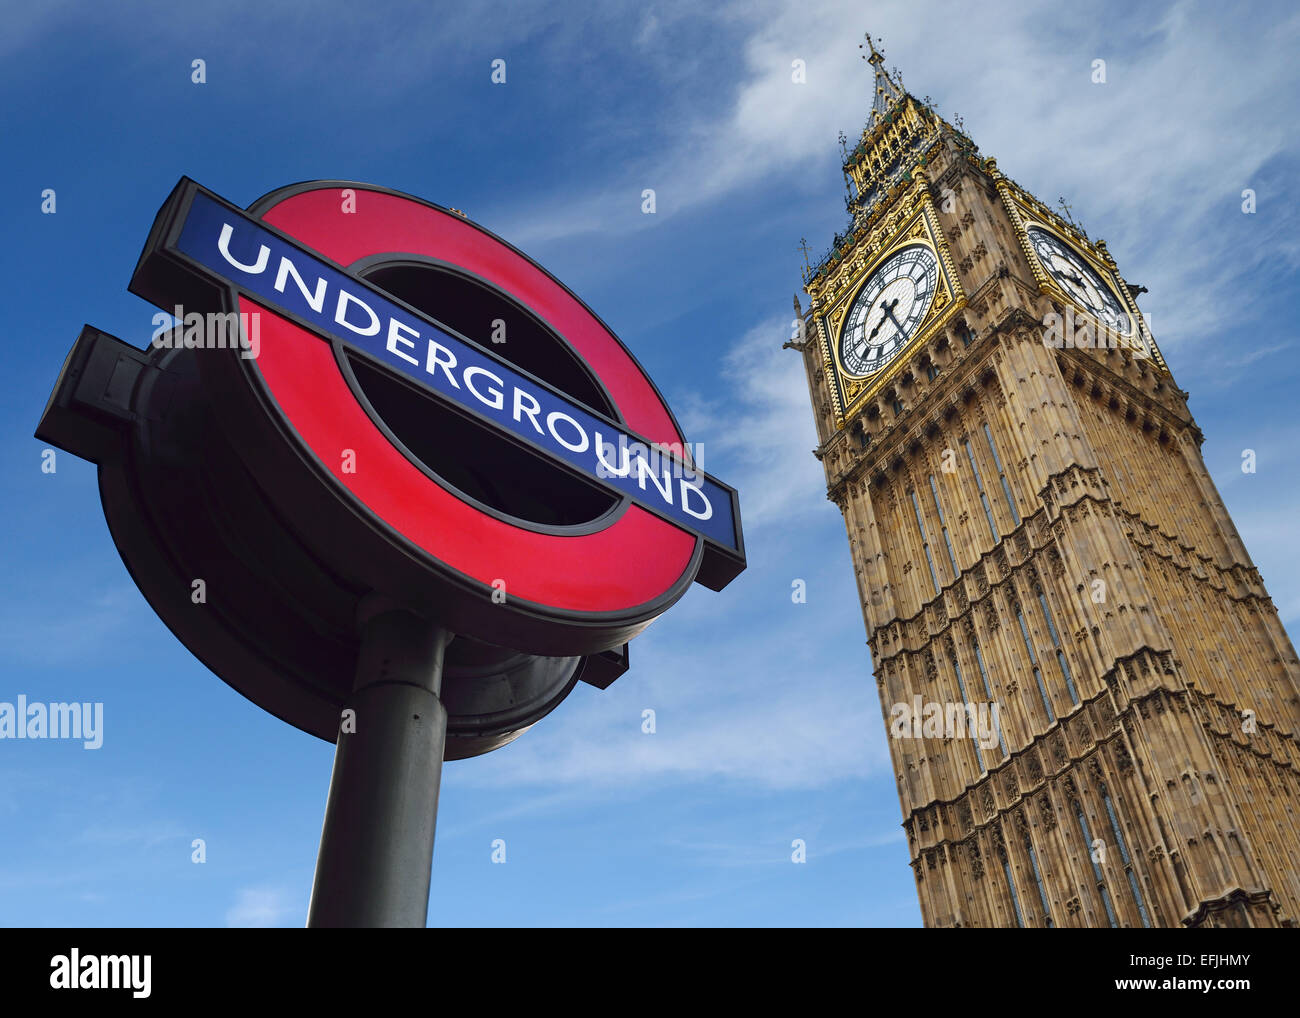 Londra, Inghilterra. Segno della metropolitana e il Big Ben, entrambe le famose icone di Londra. Regno Unito. Foto Stock